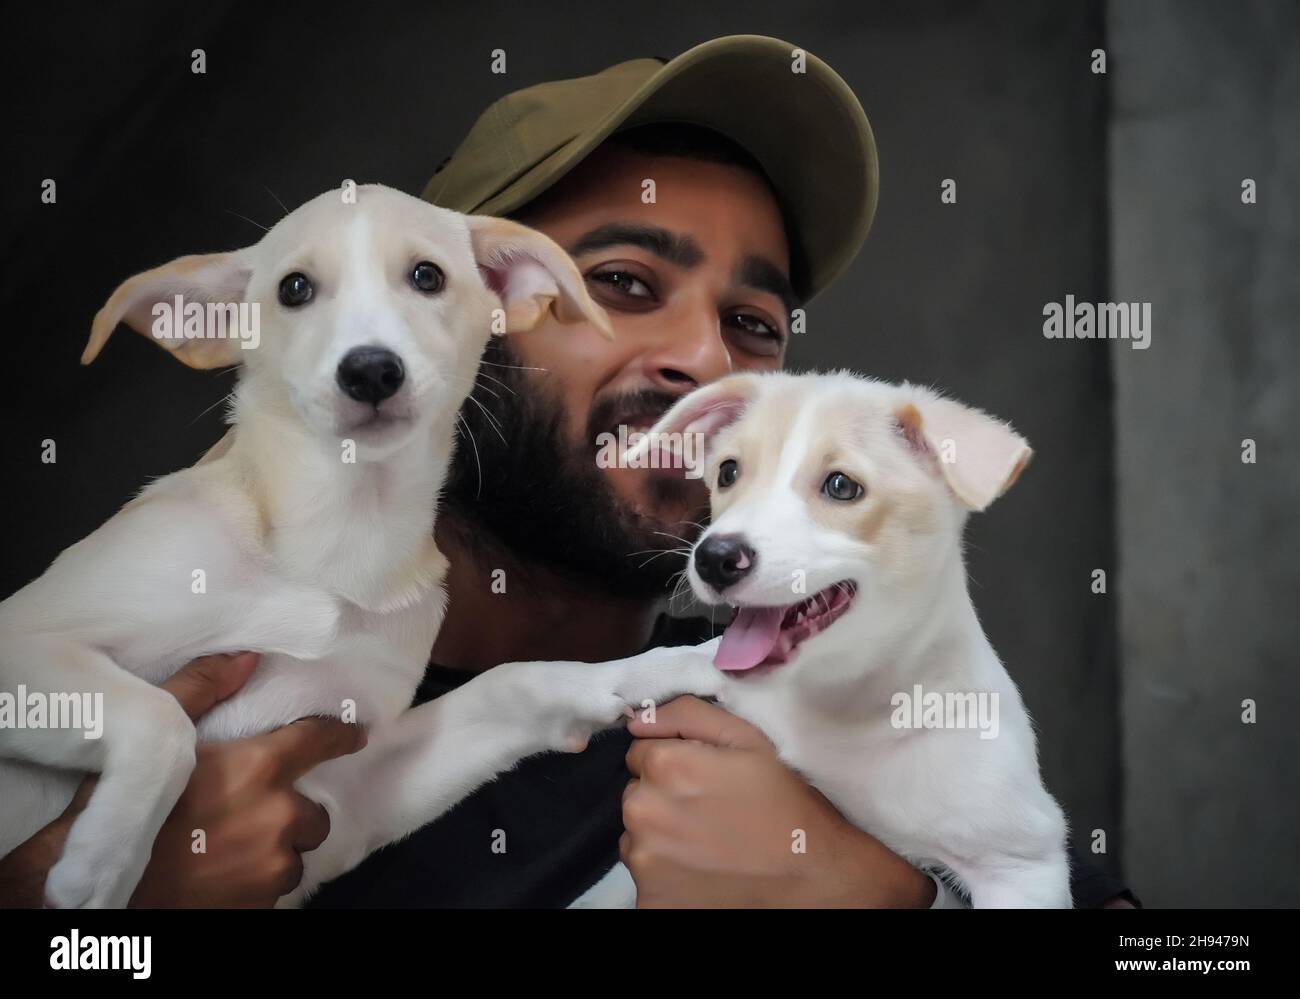 Ein Hund Liebhaber kleiner Junge mit 2 Hunden glücklich und lächelnd - selektive Fokus Bild Stockfoto